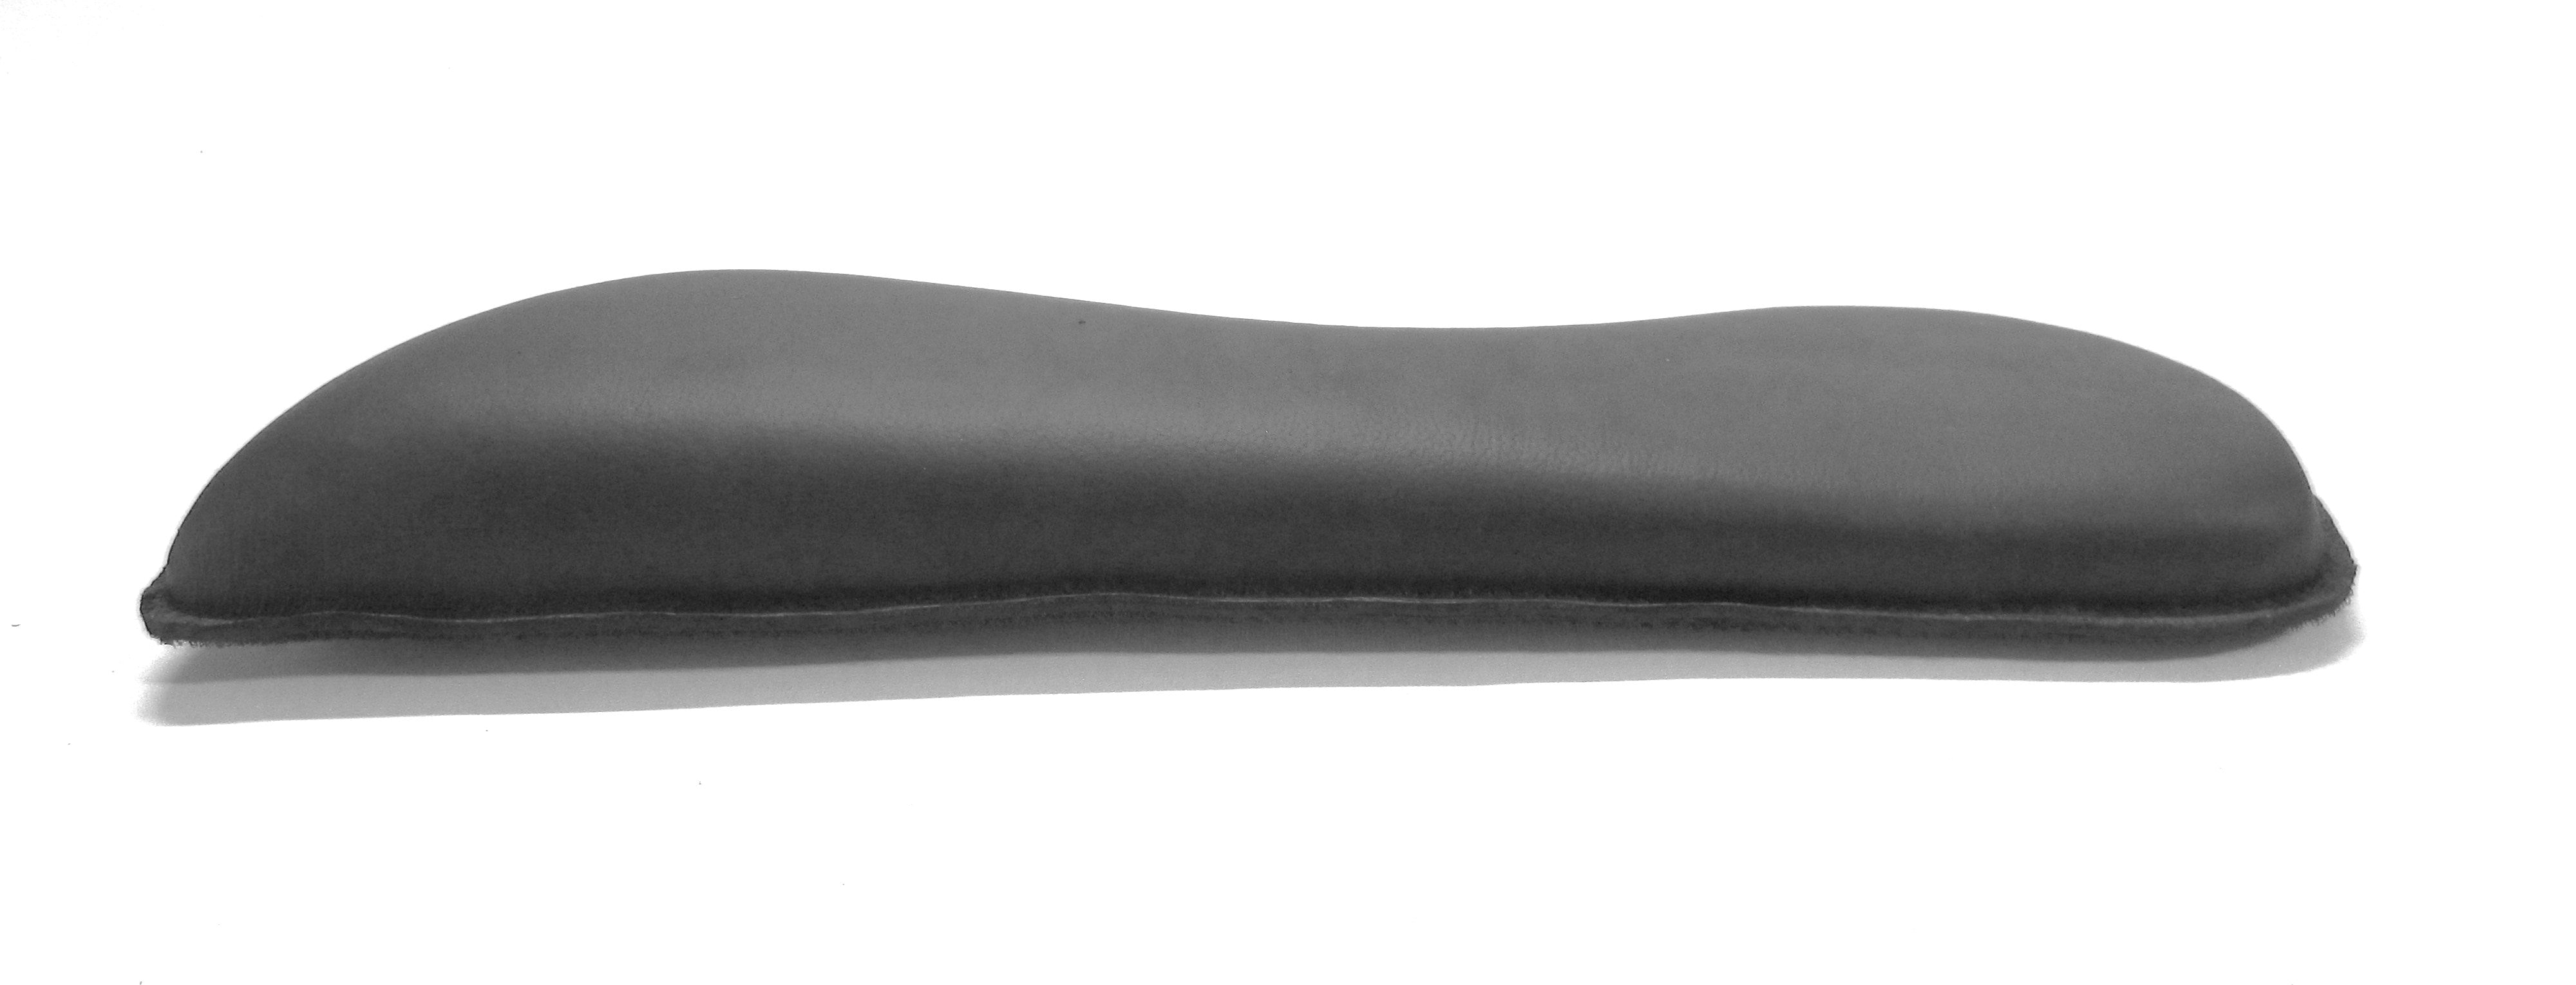 Coussin Velcro en forme de coin de 3-4-5 cm, forme standard ; Coussin de selle/panneaux Velcro